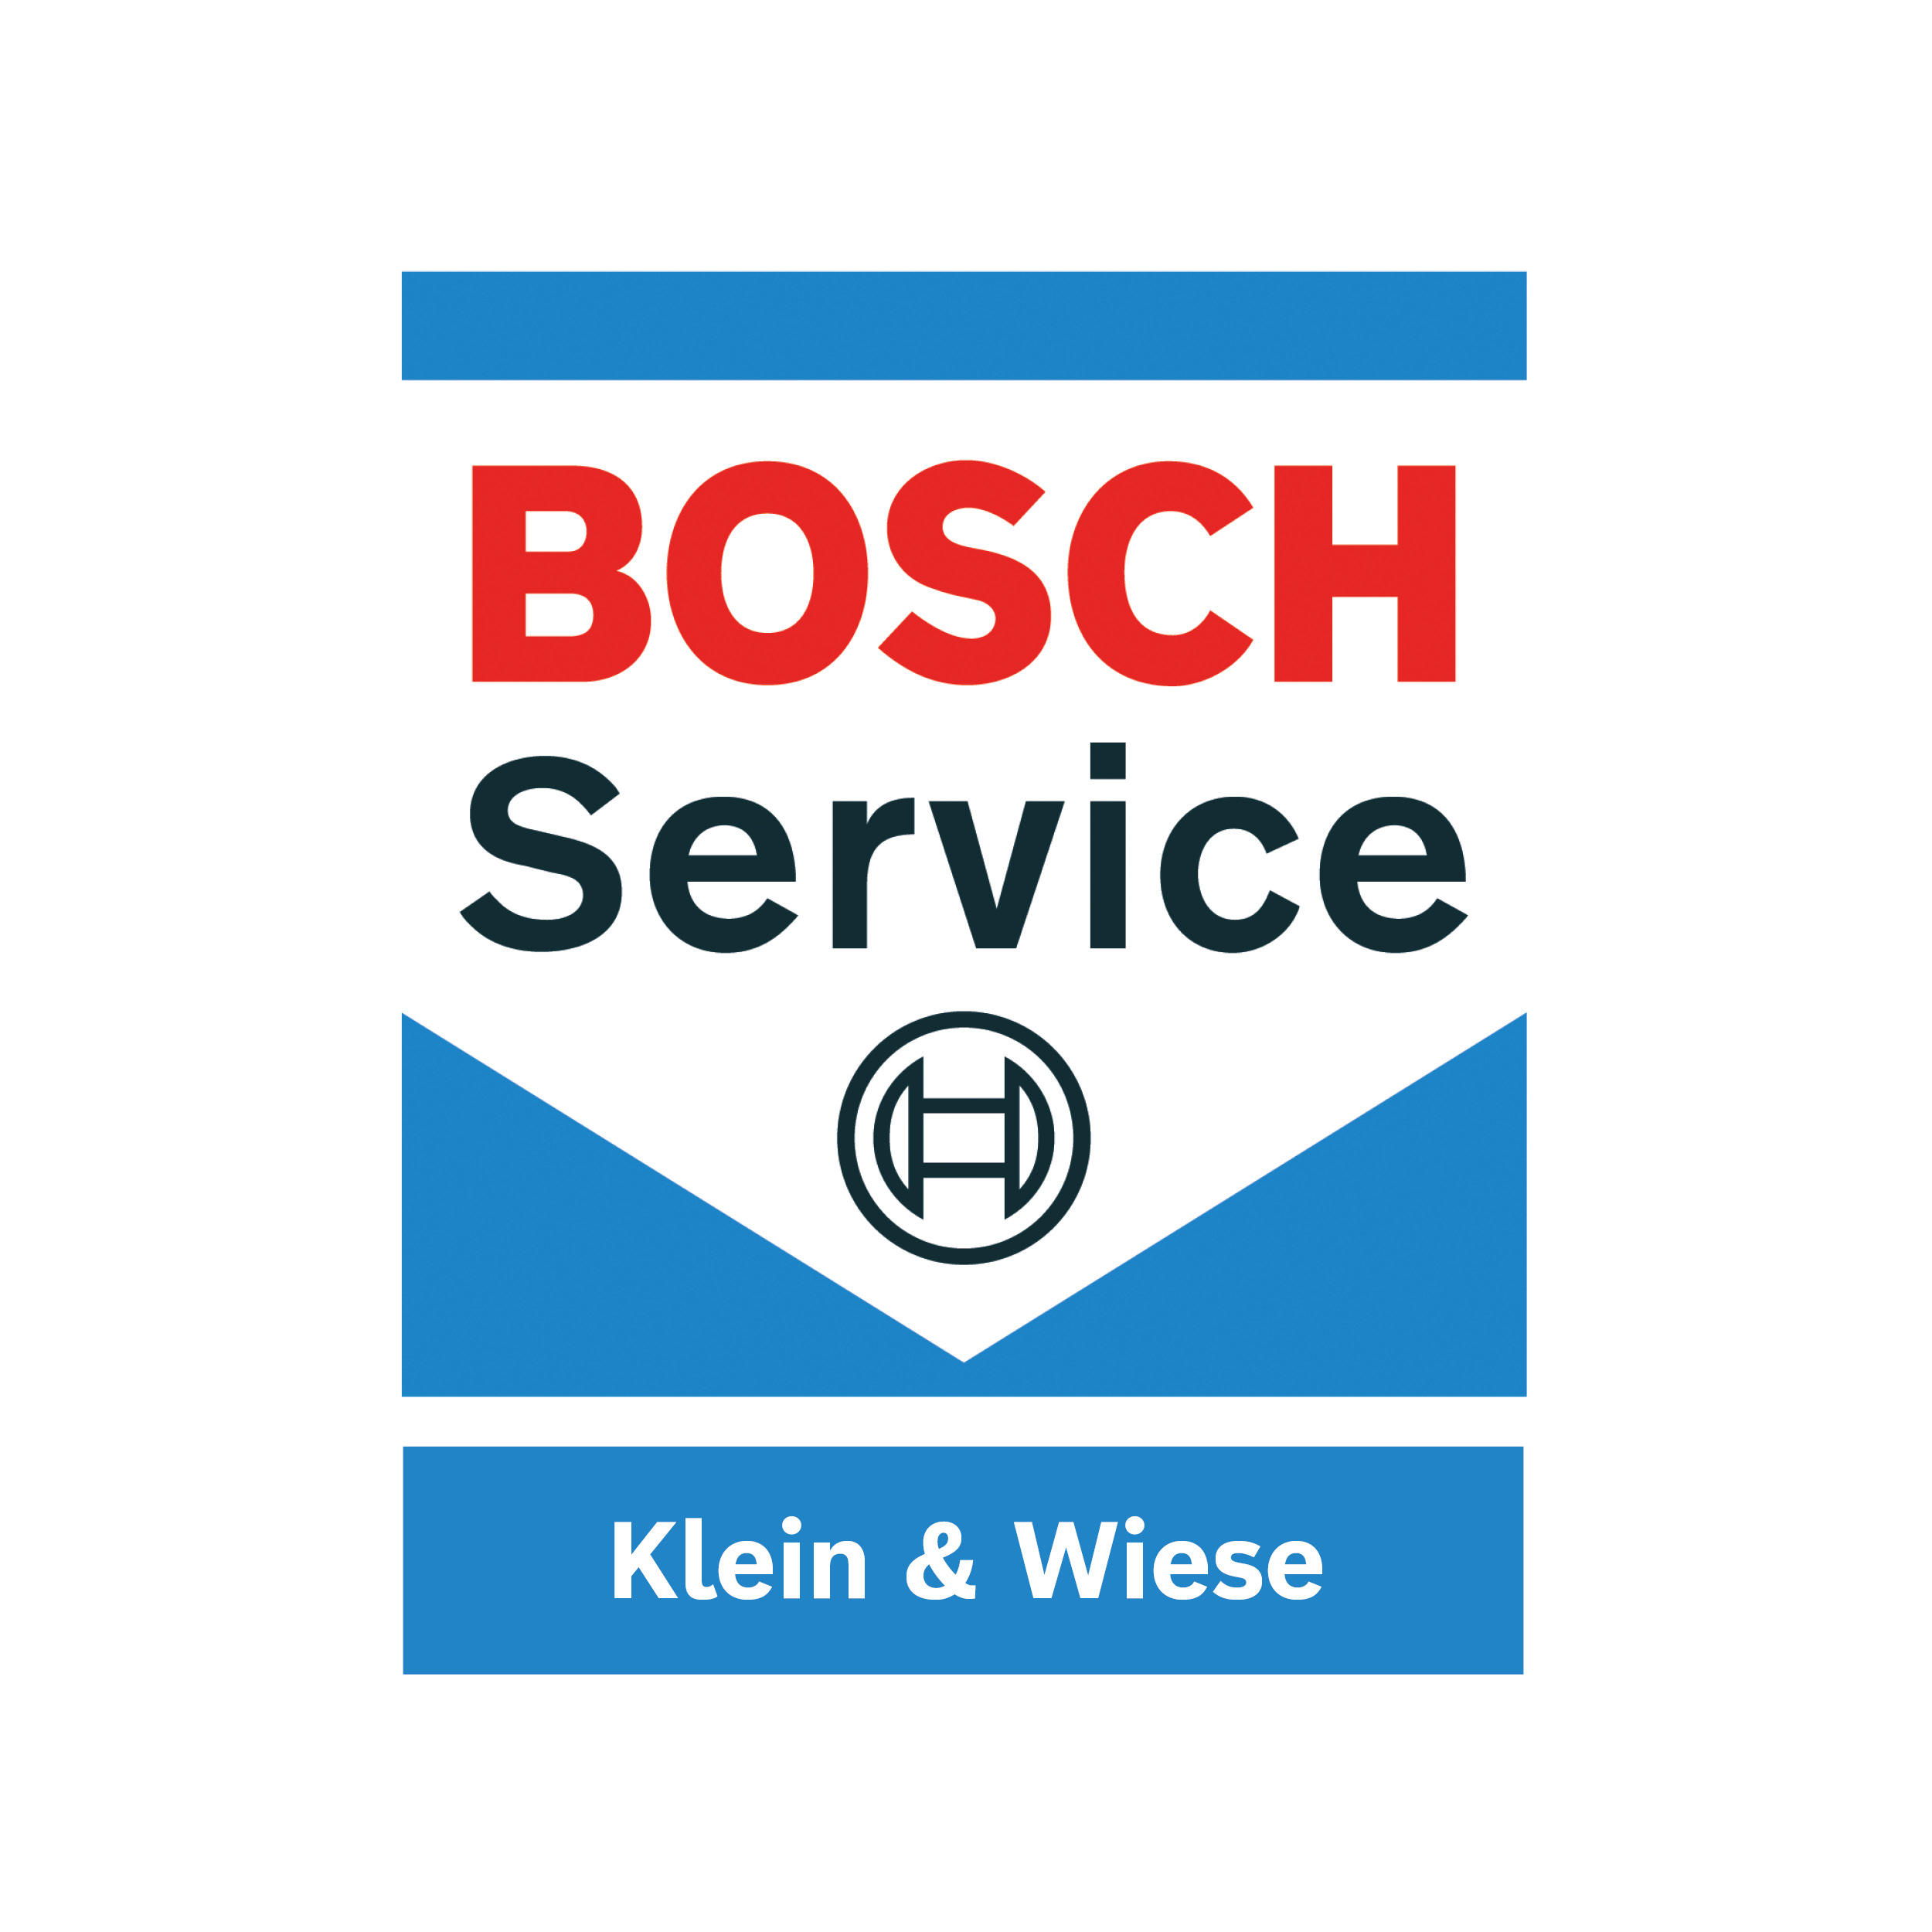 Klein & Wiese GmbH in Gevelsberg - Logo